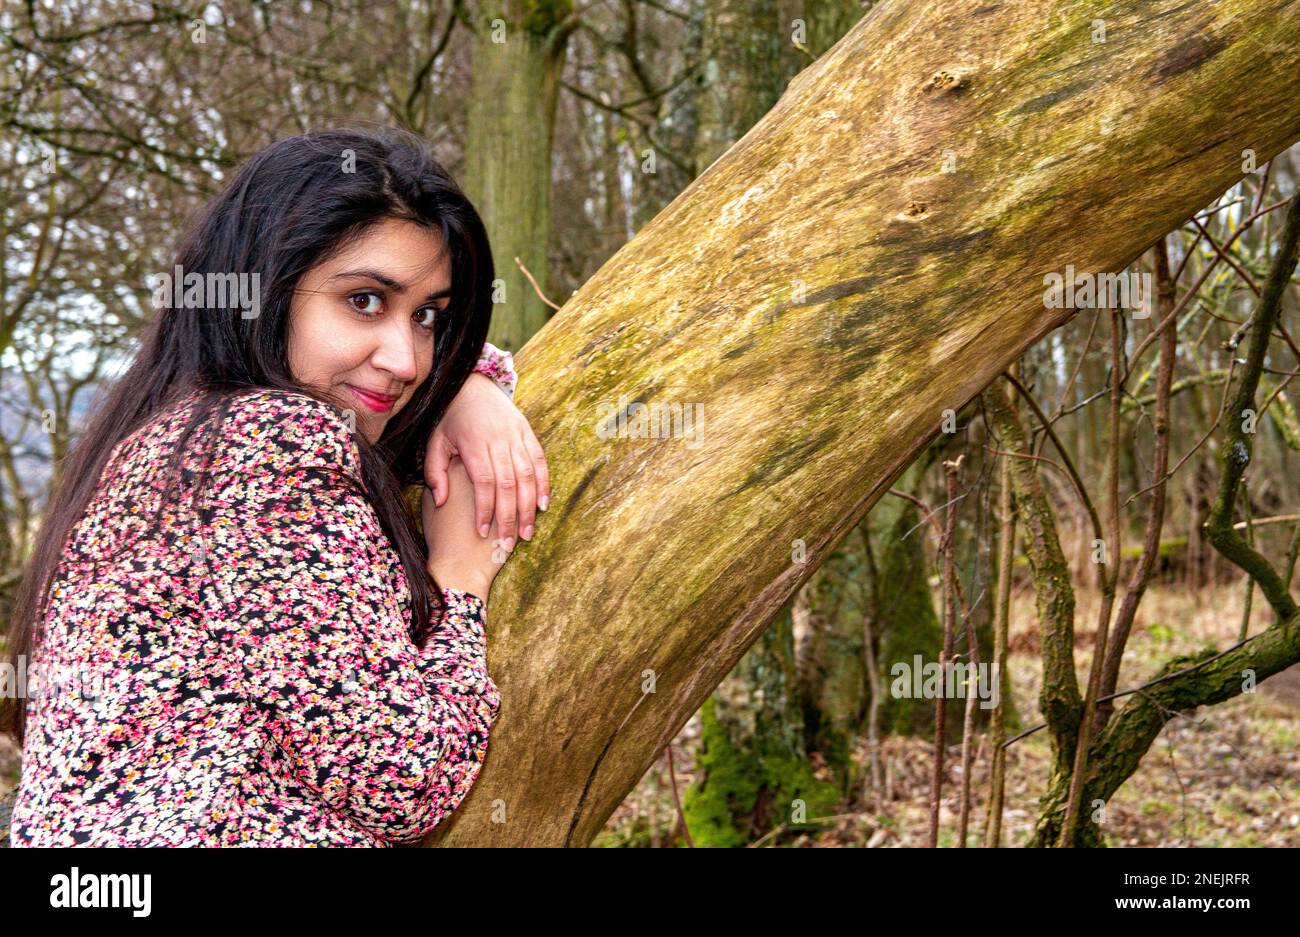 Una donna bella e alla moda trascorre la giornata facendo scattare la sua foto nei boschi del Clatto Country Park di Dundee in Scozia, Regno Unito Foto Stock